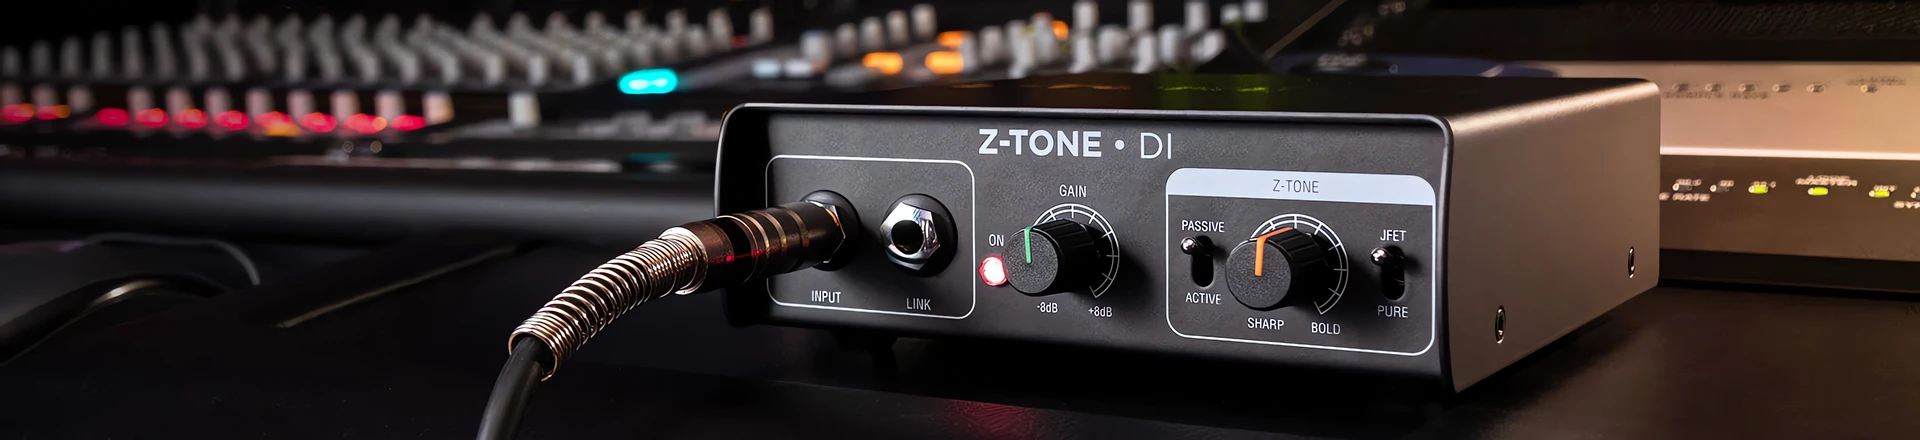 Nowe produkty z układem Z-Tone, czyli garść nowości od IK Multimedia